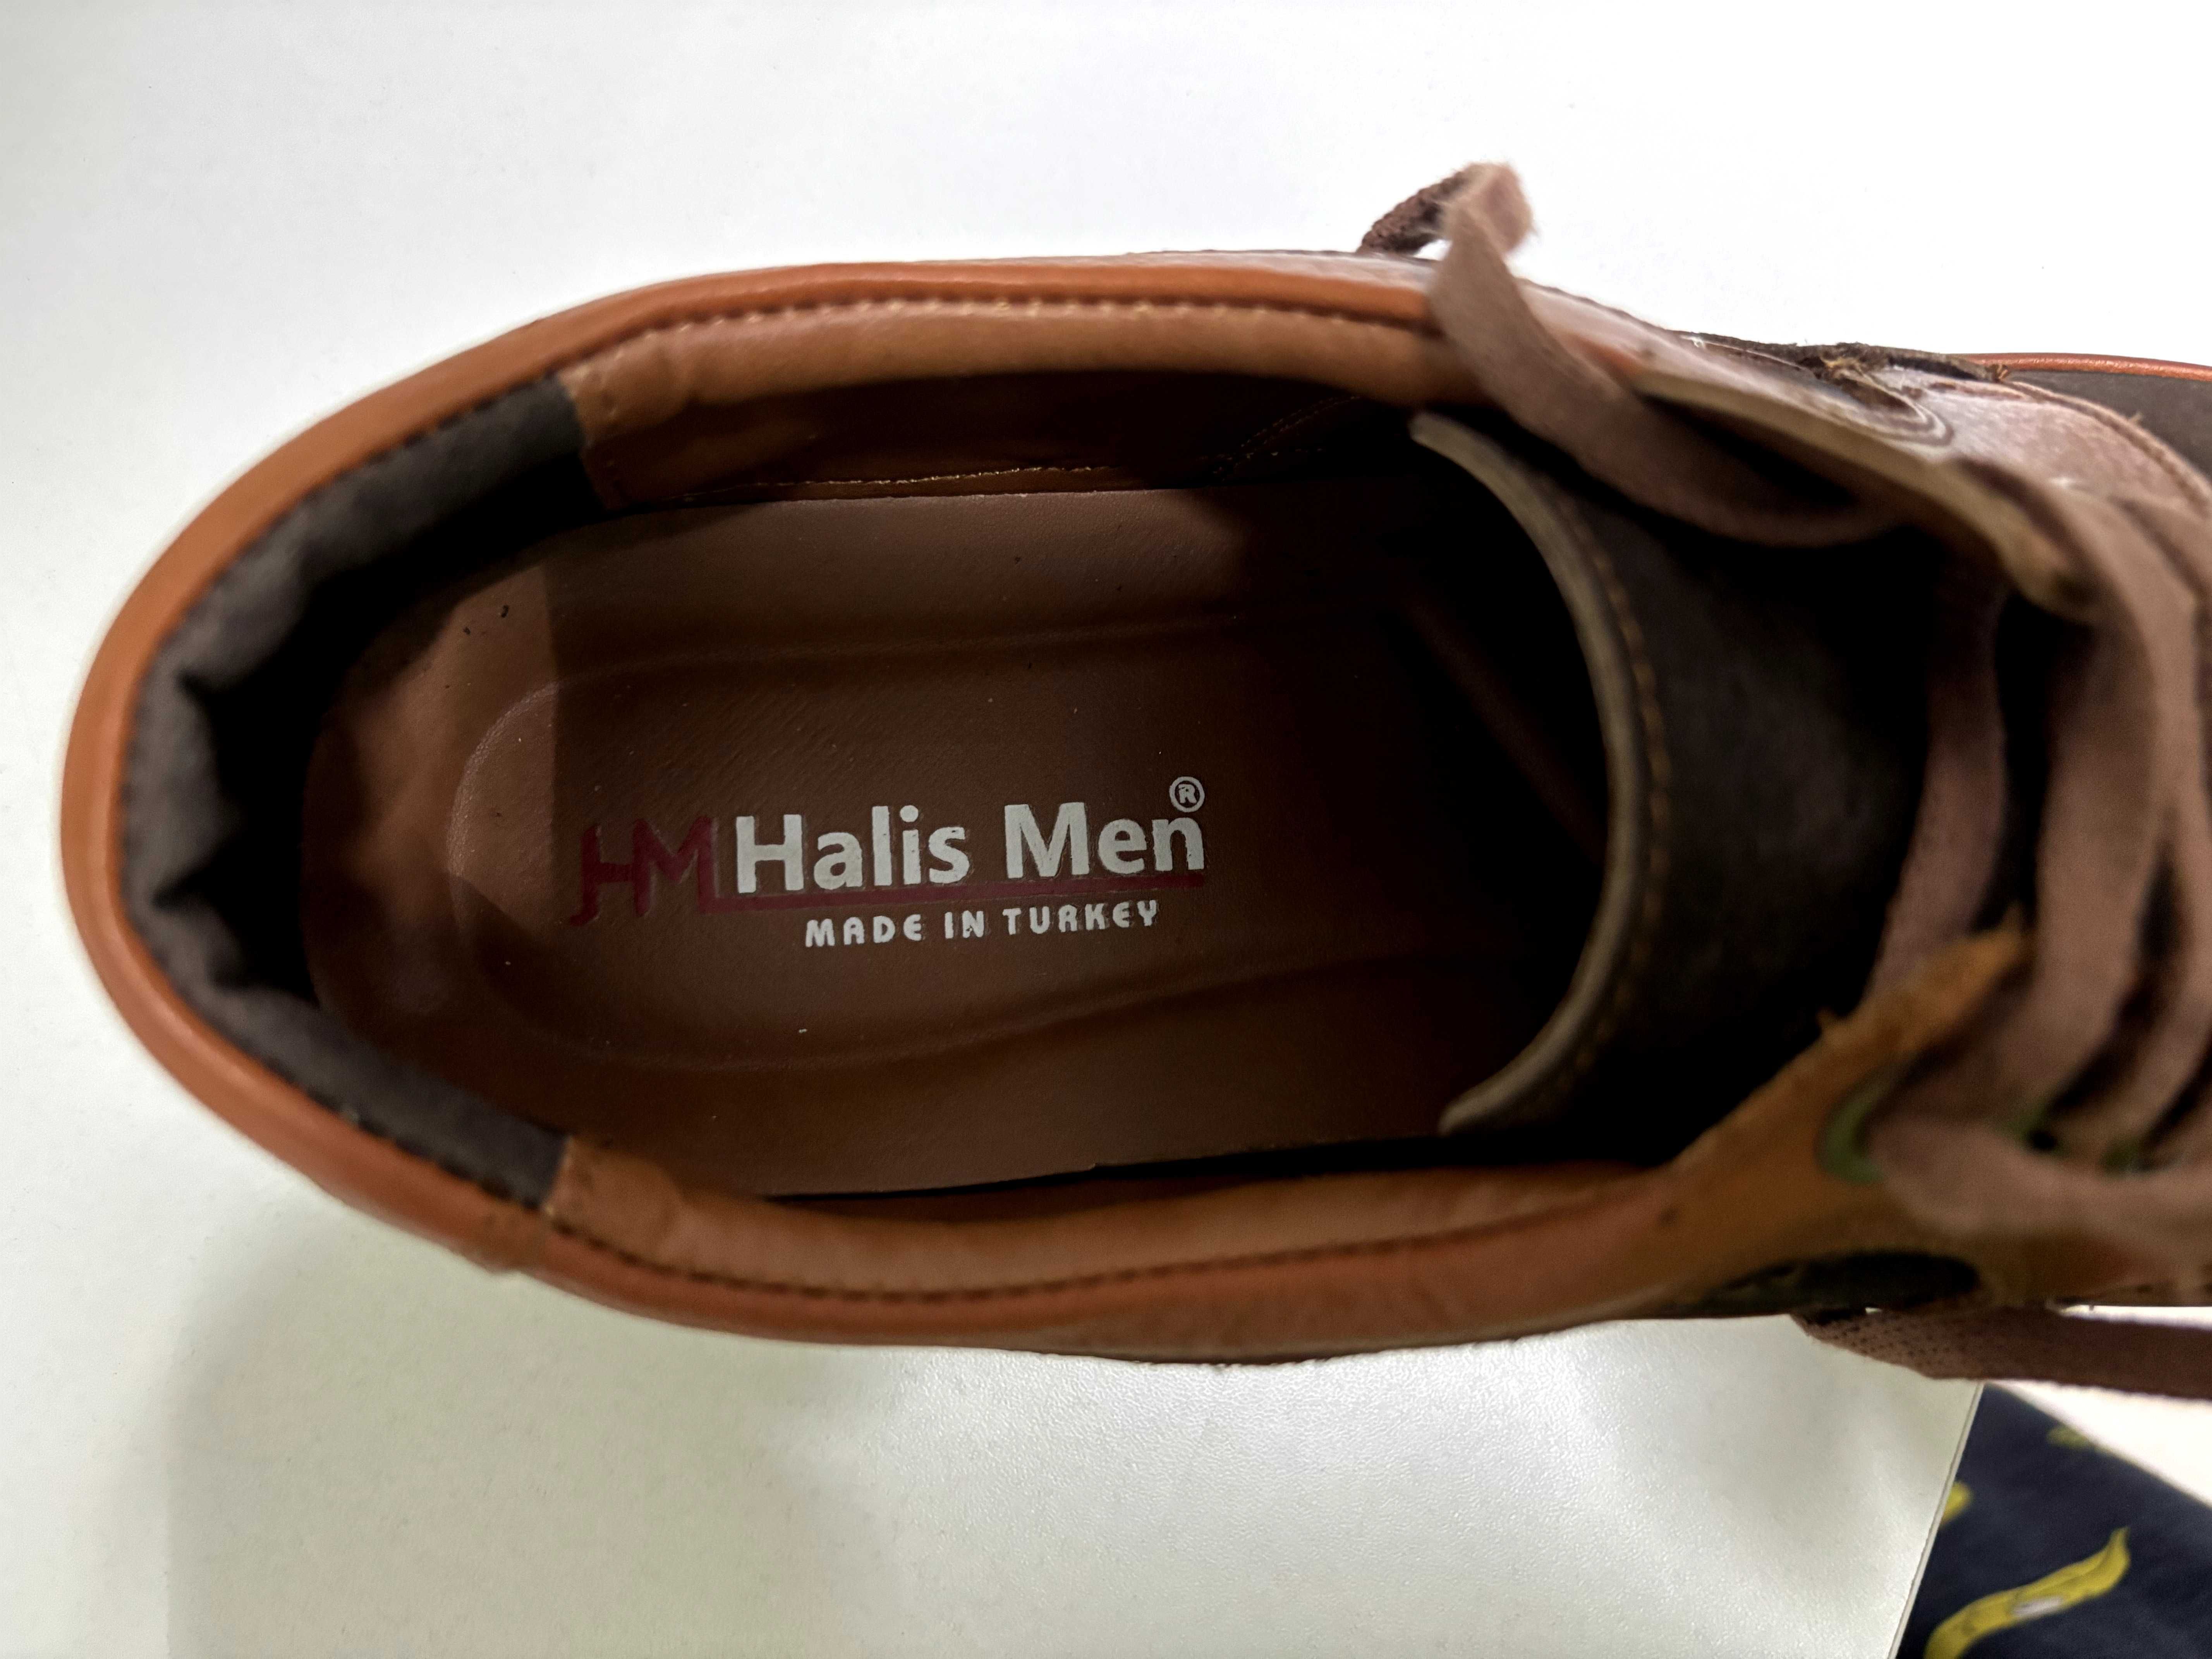 Обувь (ботинки/туфли) от HHalis Men, 42р турецкие по низкой цене